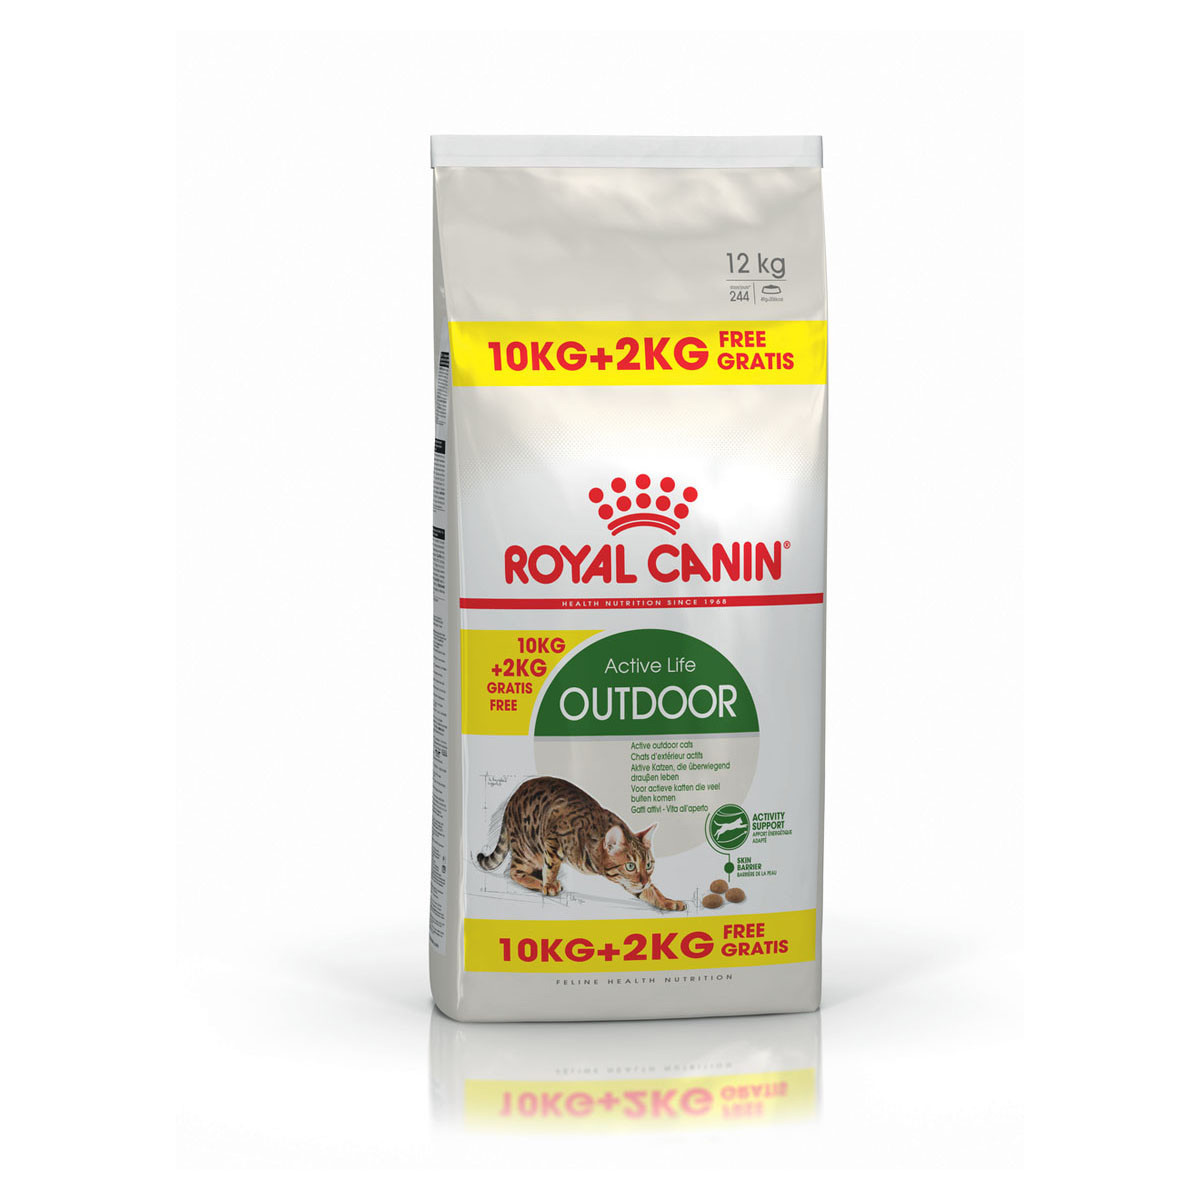 ROYAL CANIN OUTDOOR granule pro venkovní kočky 10 kg + 2 kg zdarma